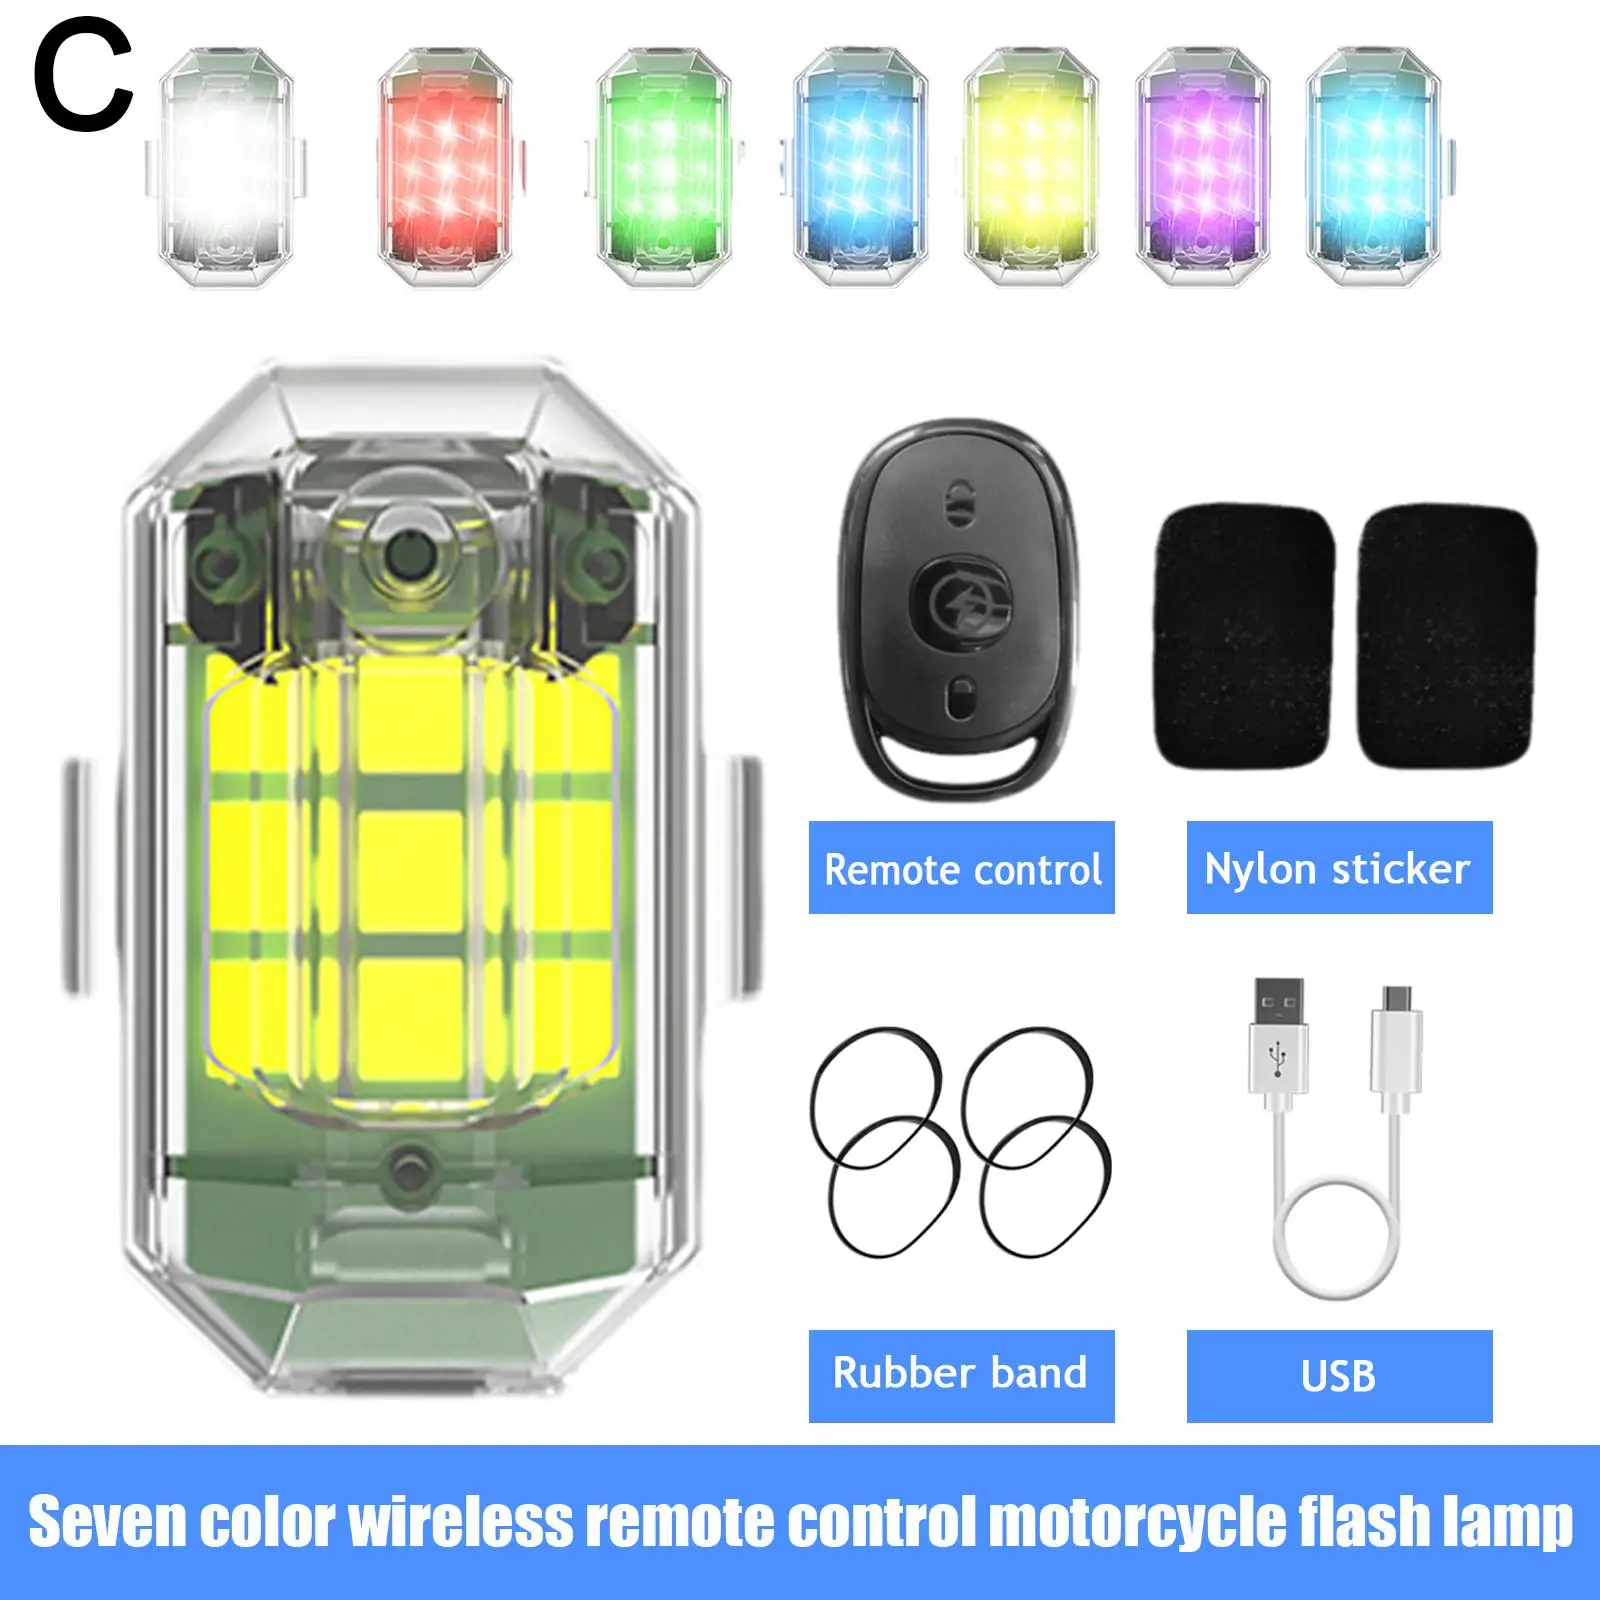 neue m3 drahtlose fernbedienung flash led strobe licht für auto auto  motorrad fahrrad drone roller anti-kollision warnleuchte